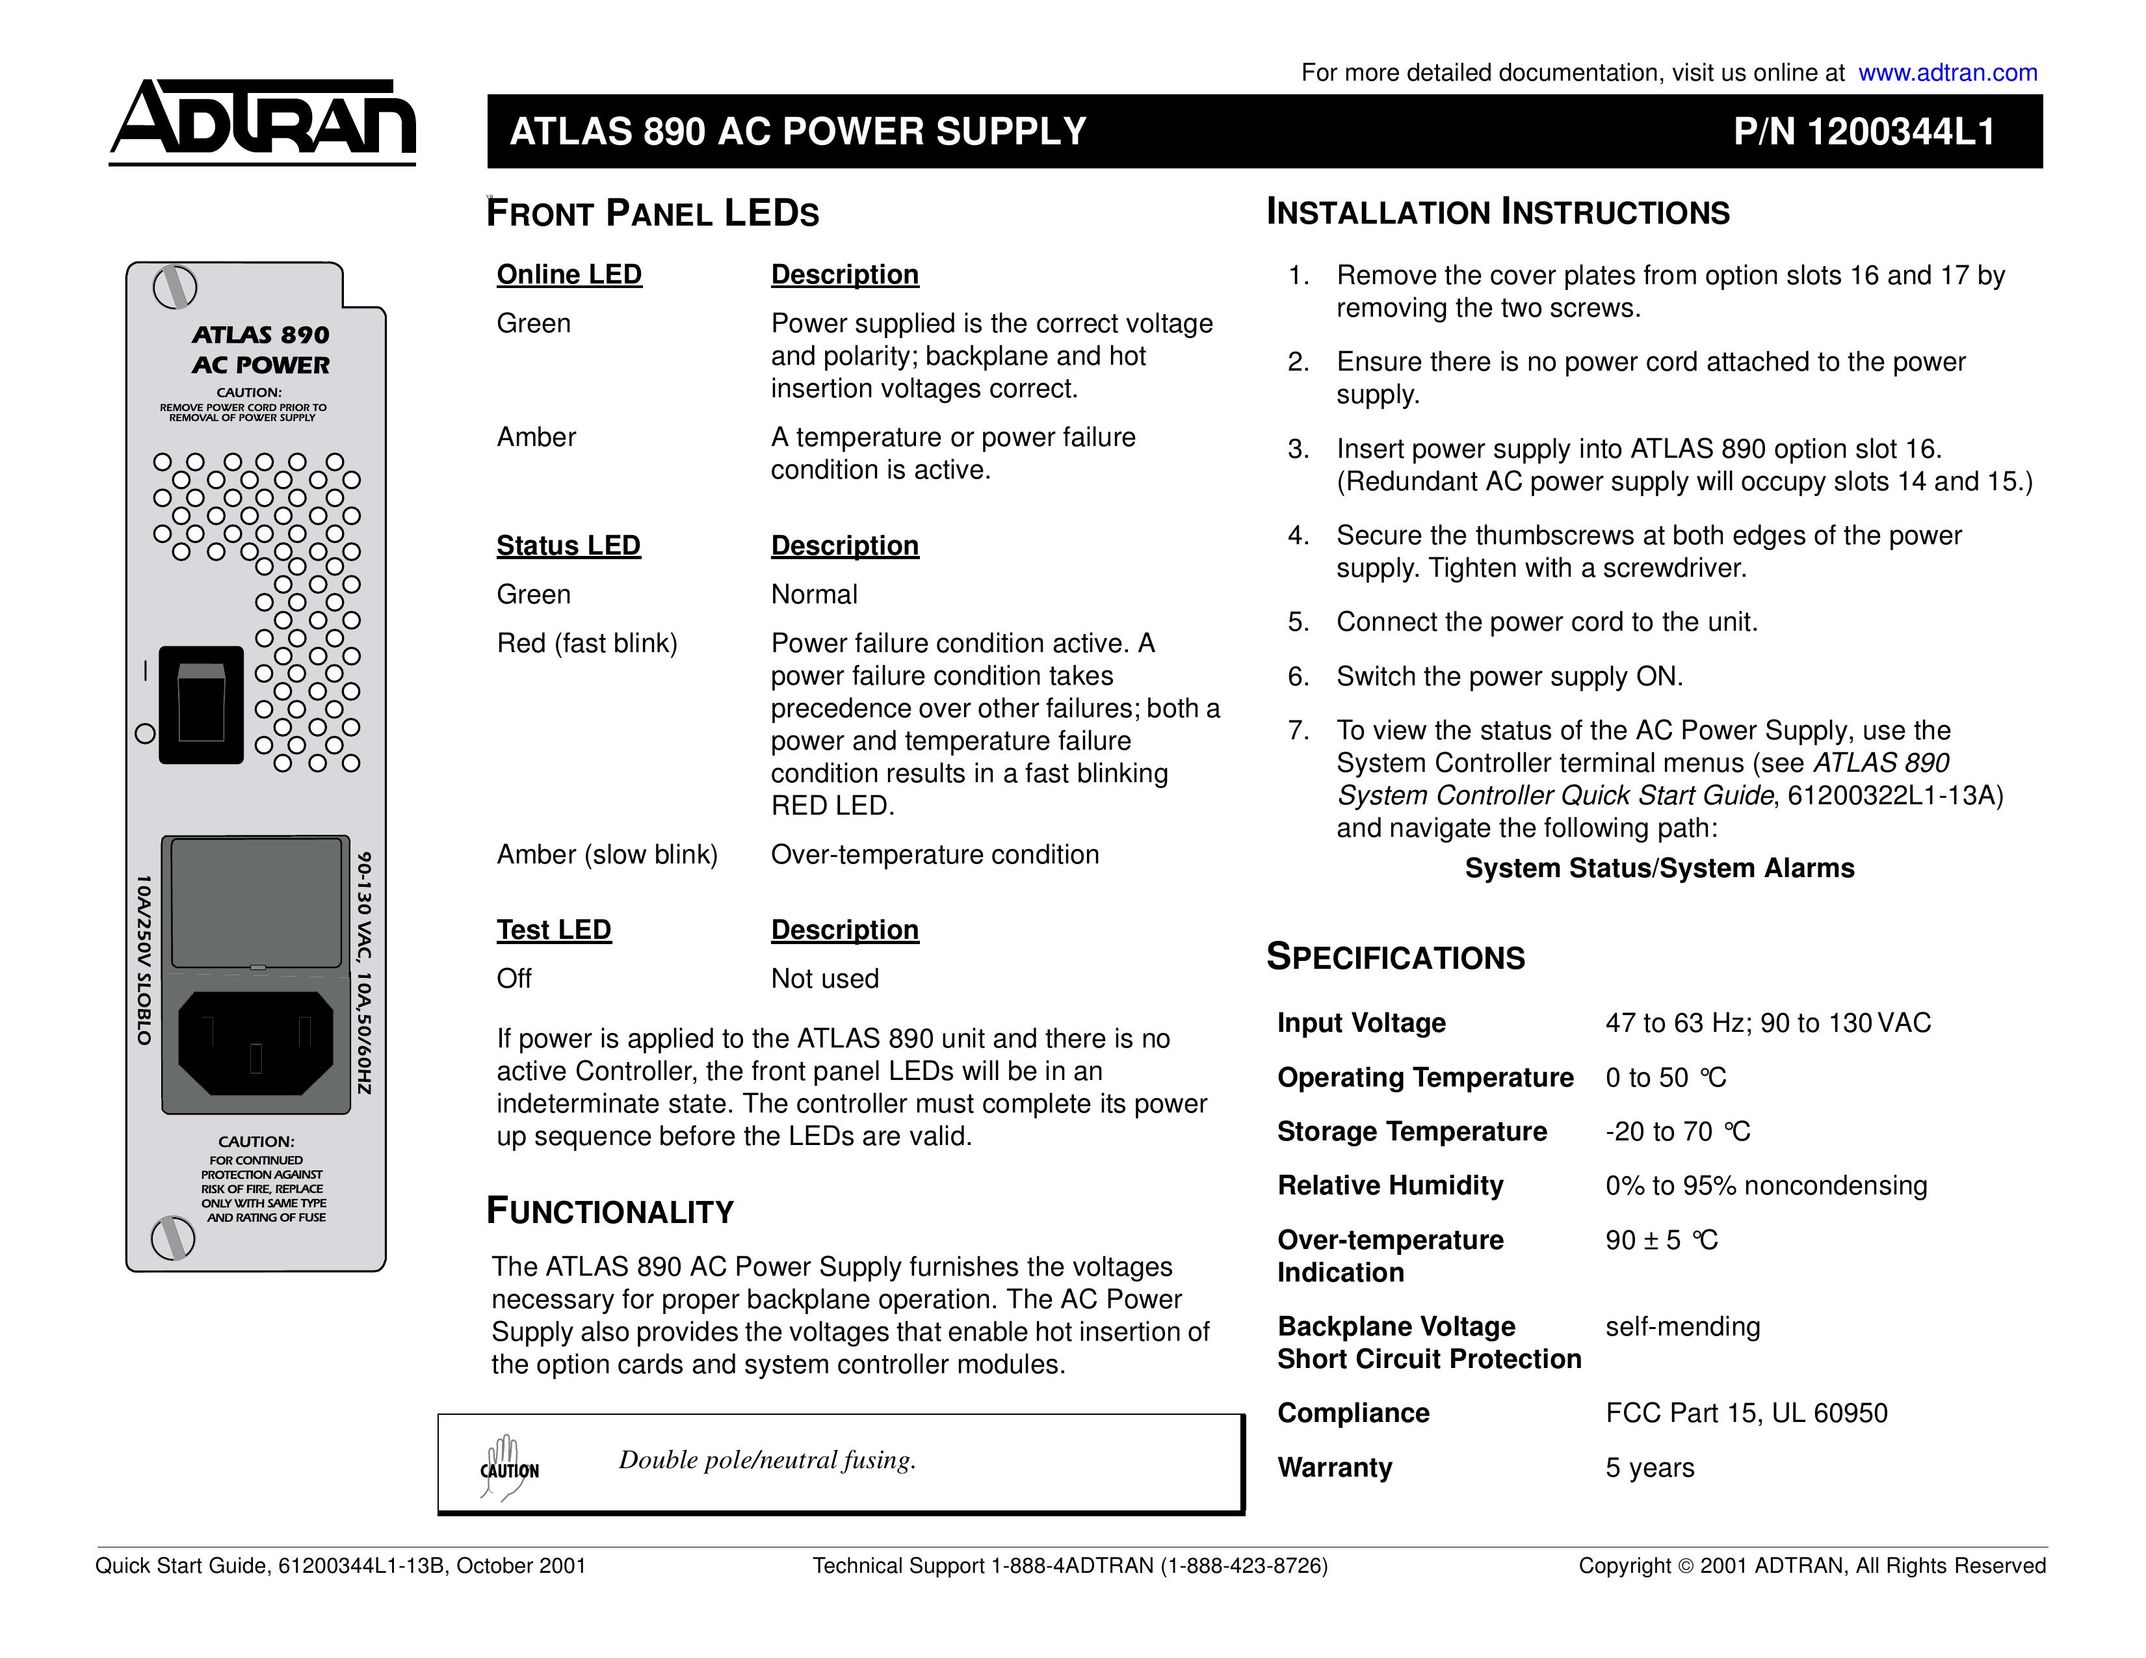 ADTRAN ATLAS 890 Power Supply User Manual